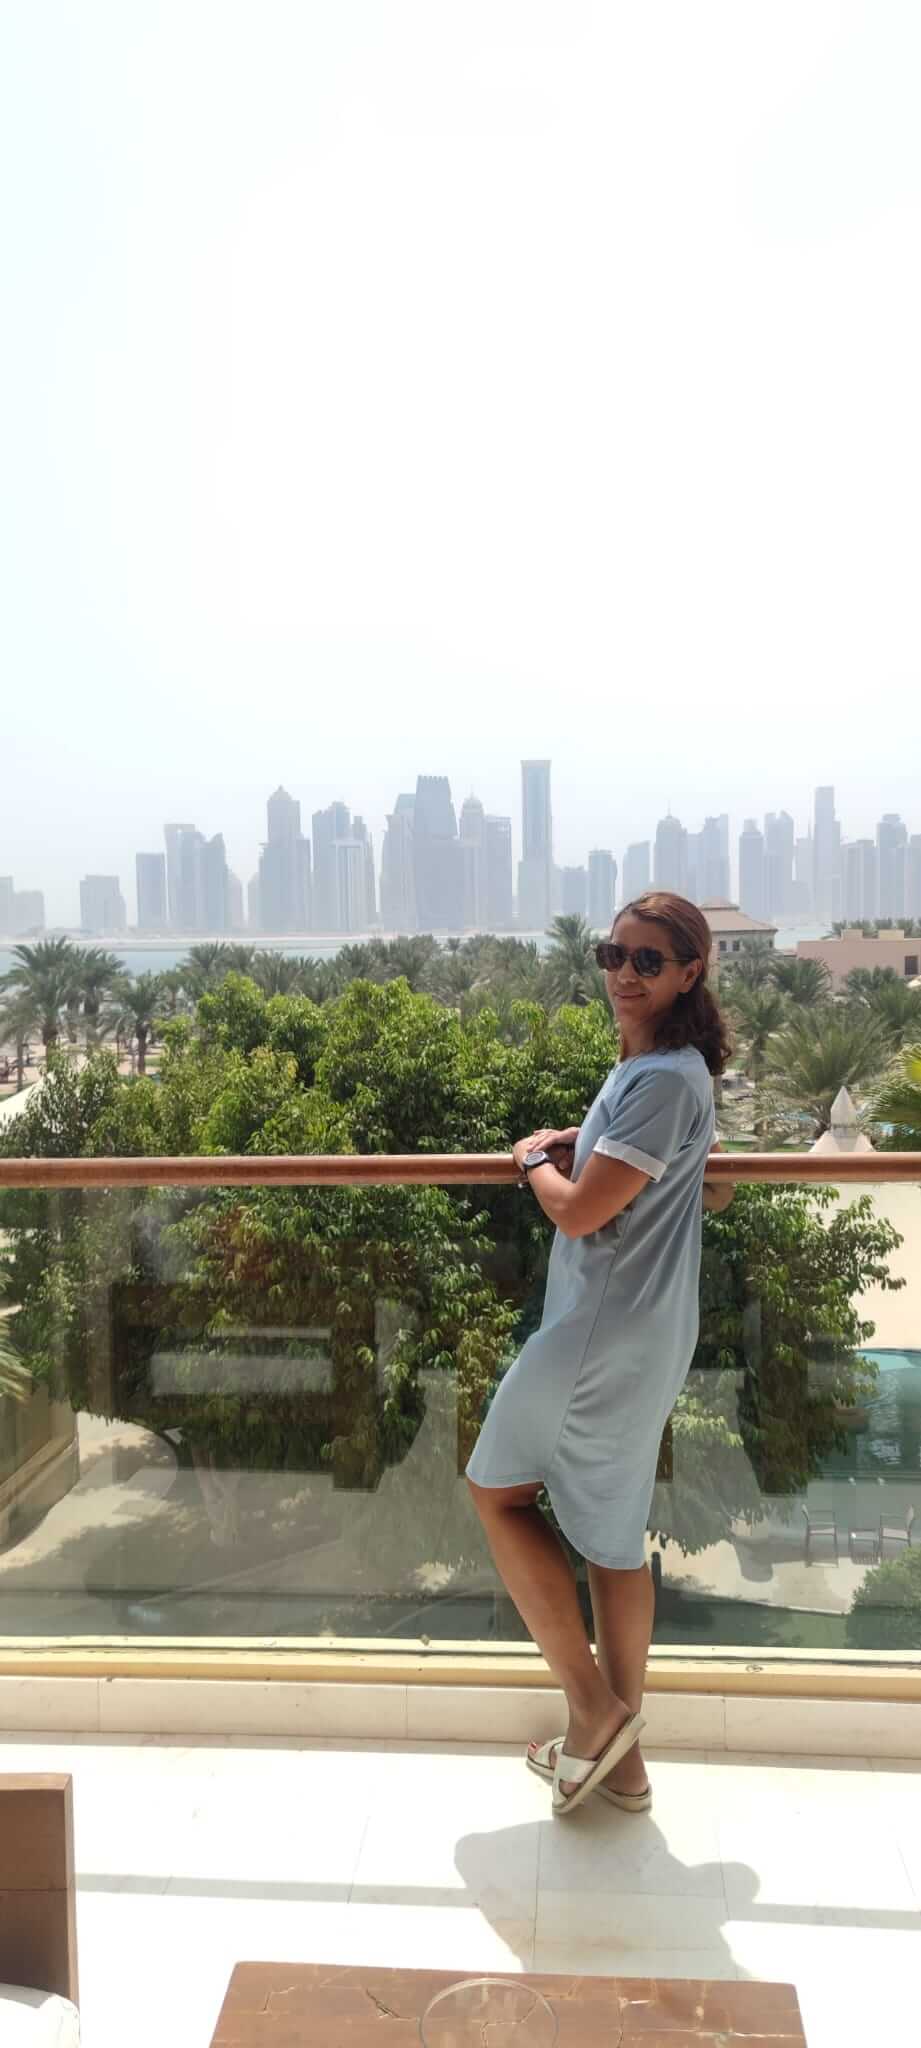 Hala steht auf einem verglasten Balkon und im Hintergrund ist eine Skyline aus Wolkenkratzern